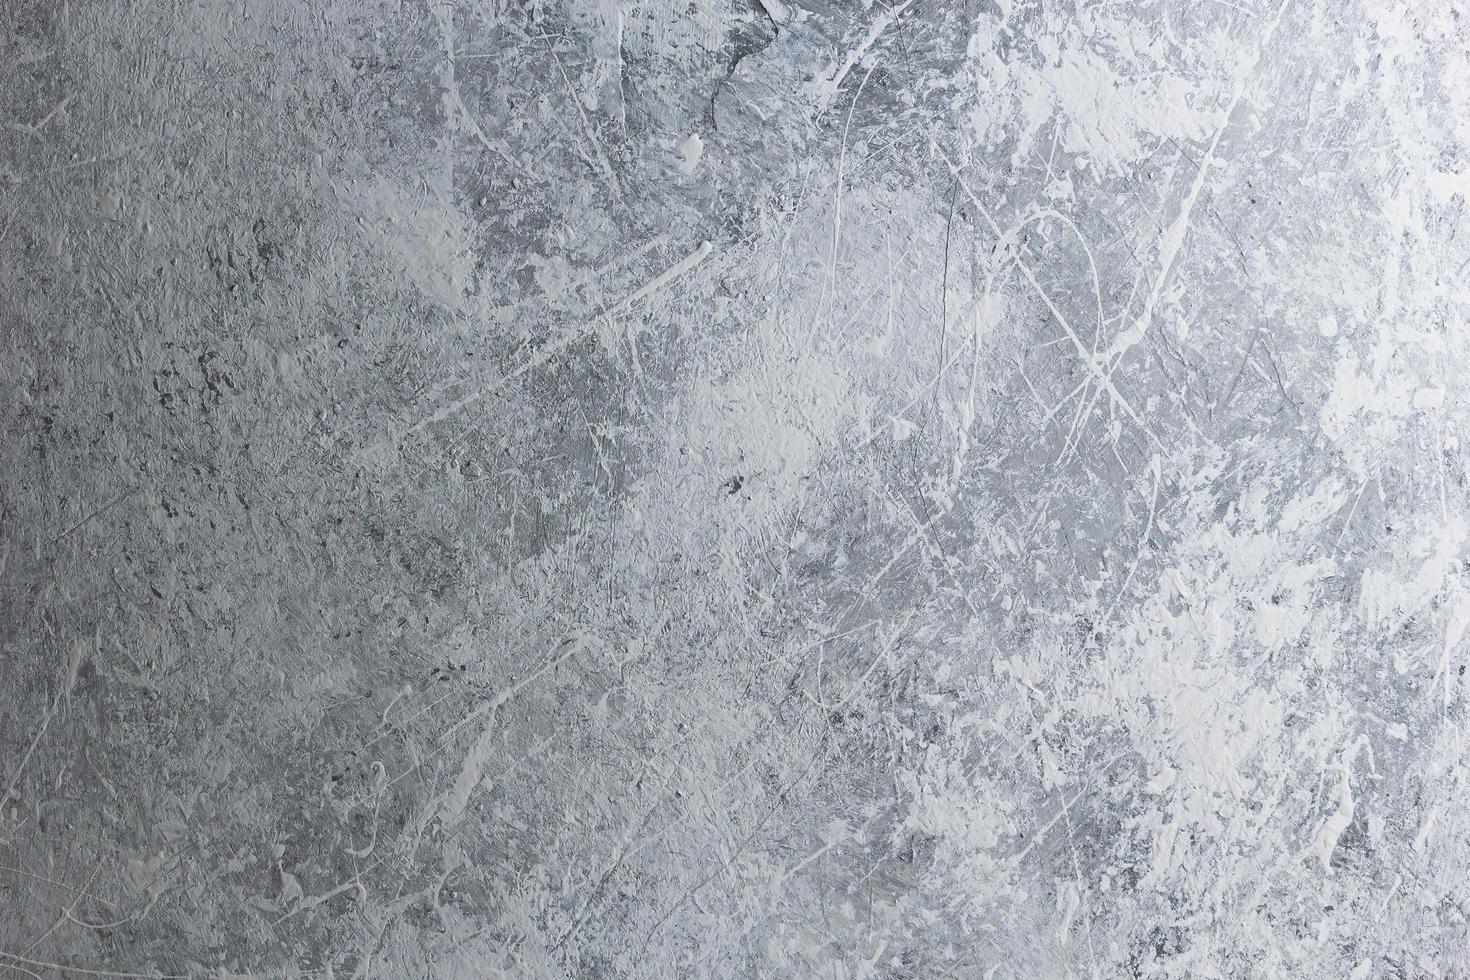 Vollmondtextur in weißer und grauer Farbe auf Stein foto